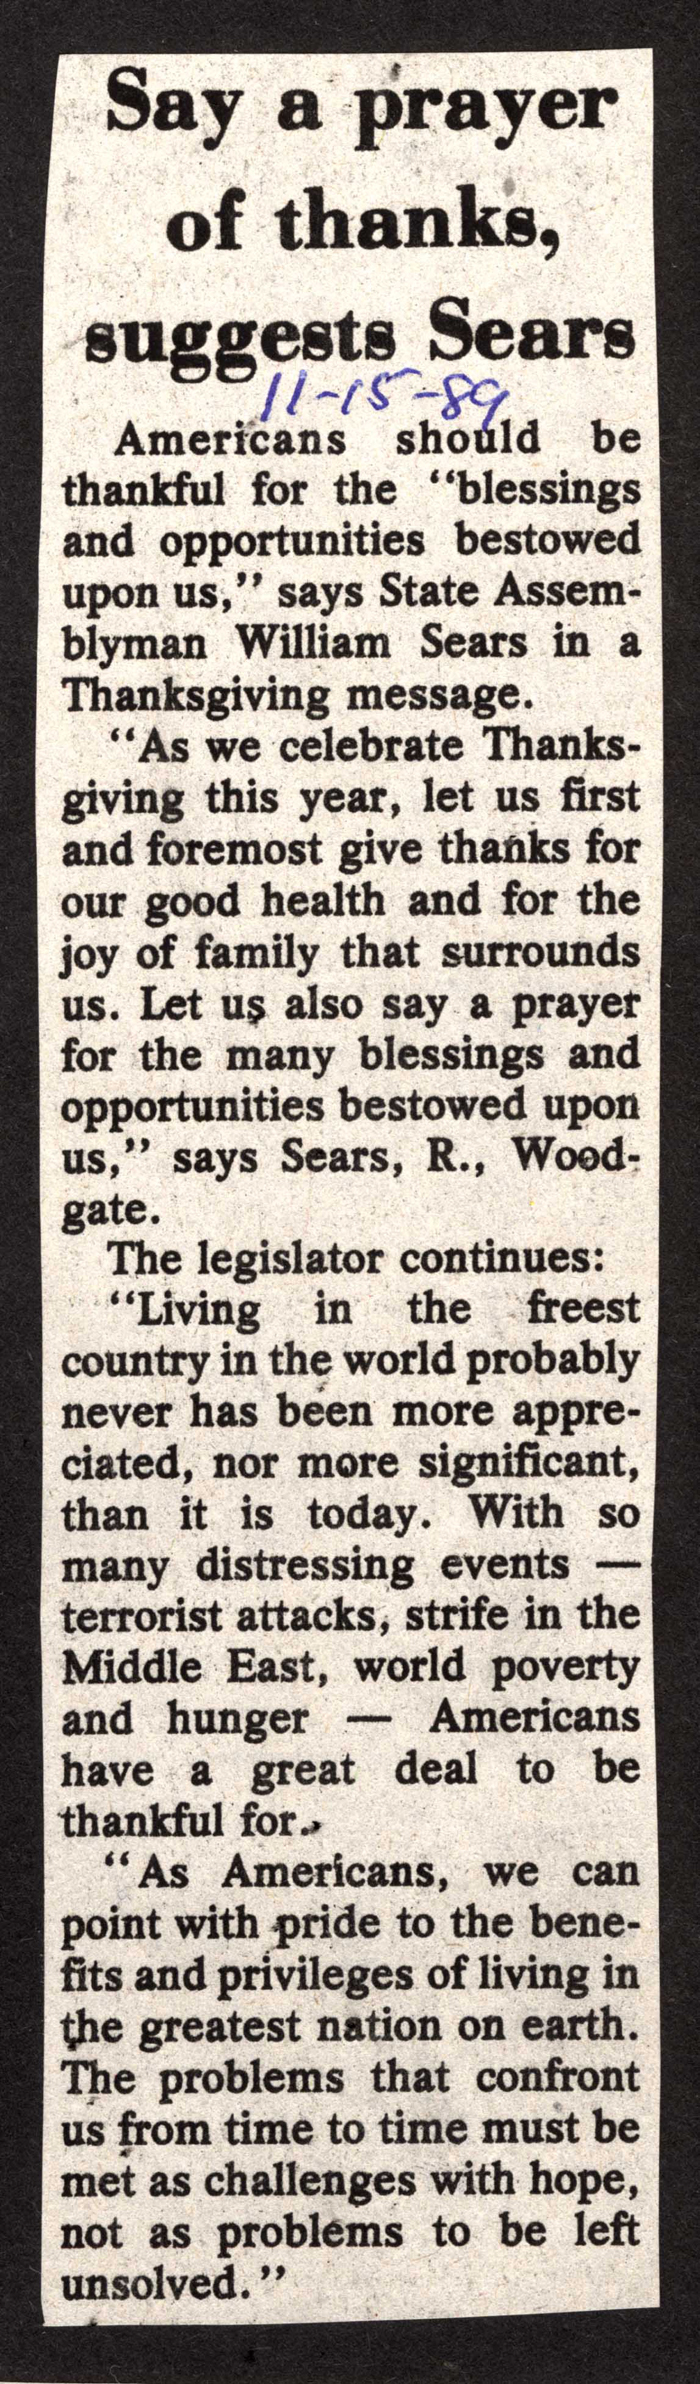 say a prayer suggests sears at thanksgiving november 15 1989